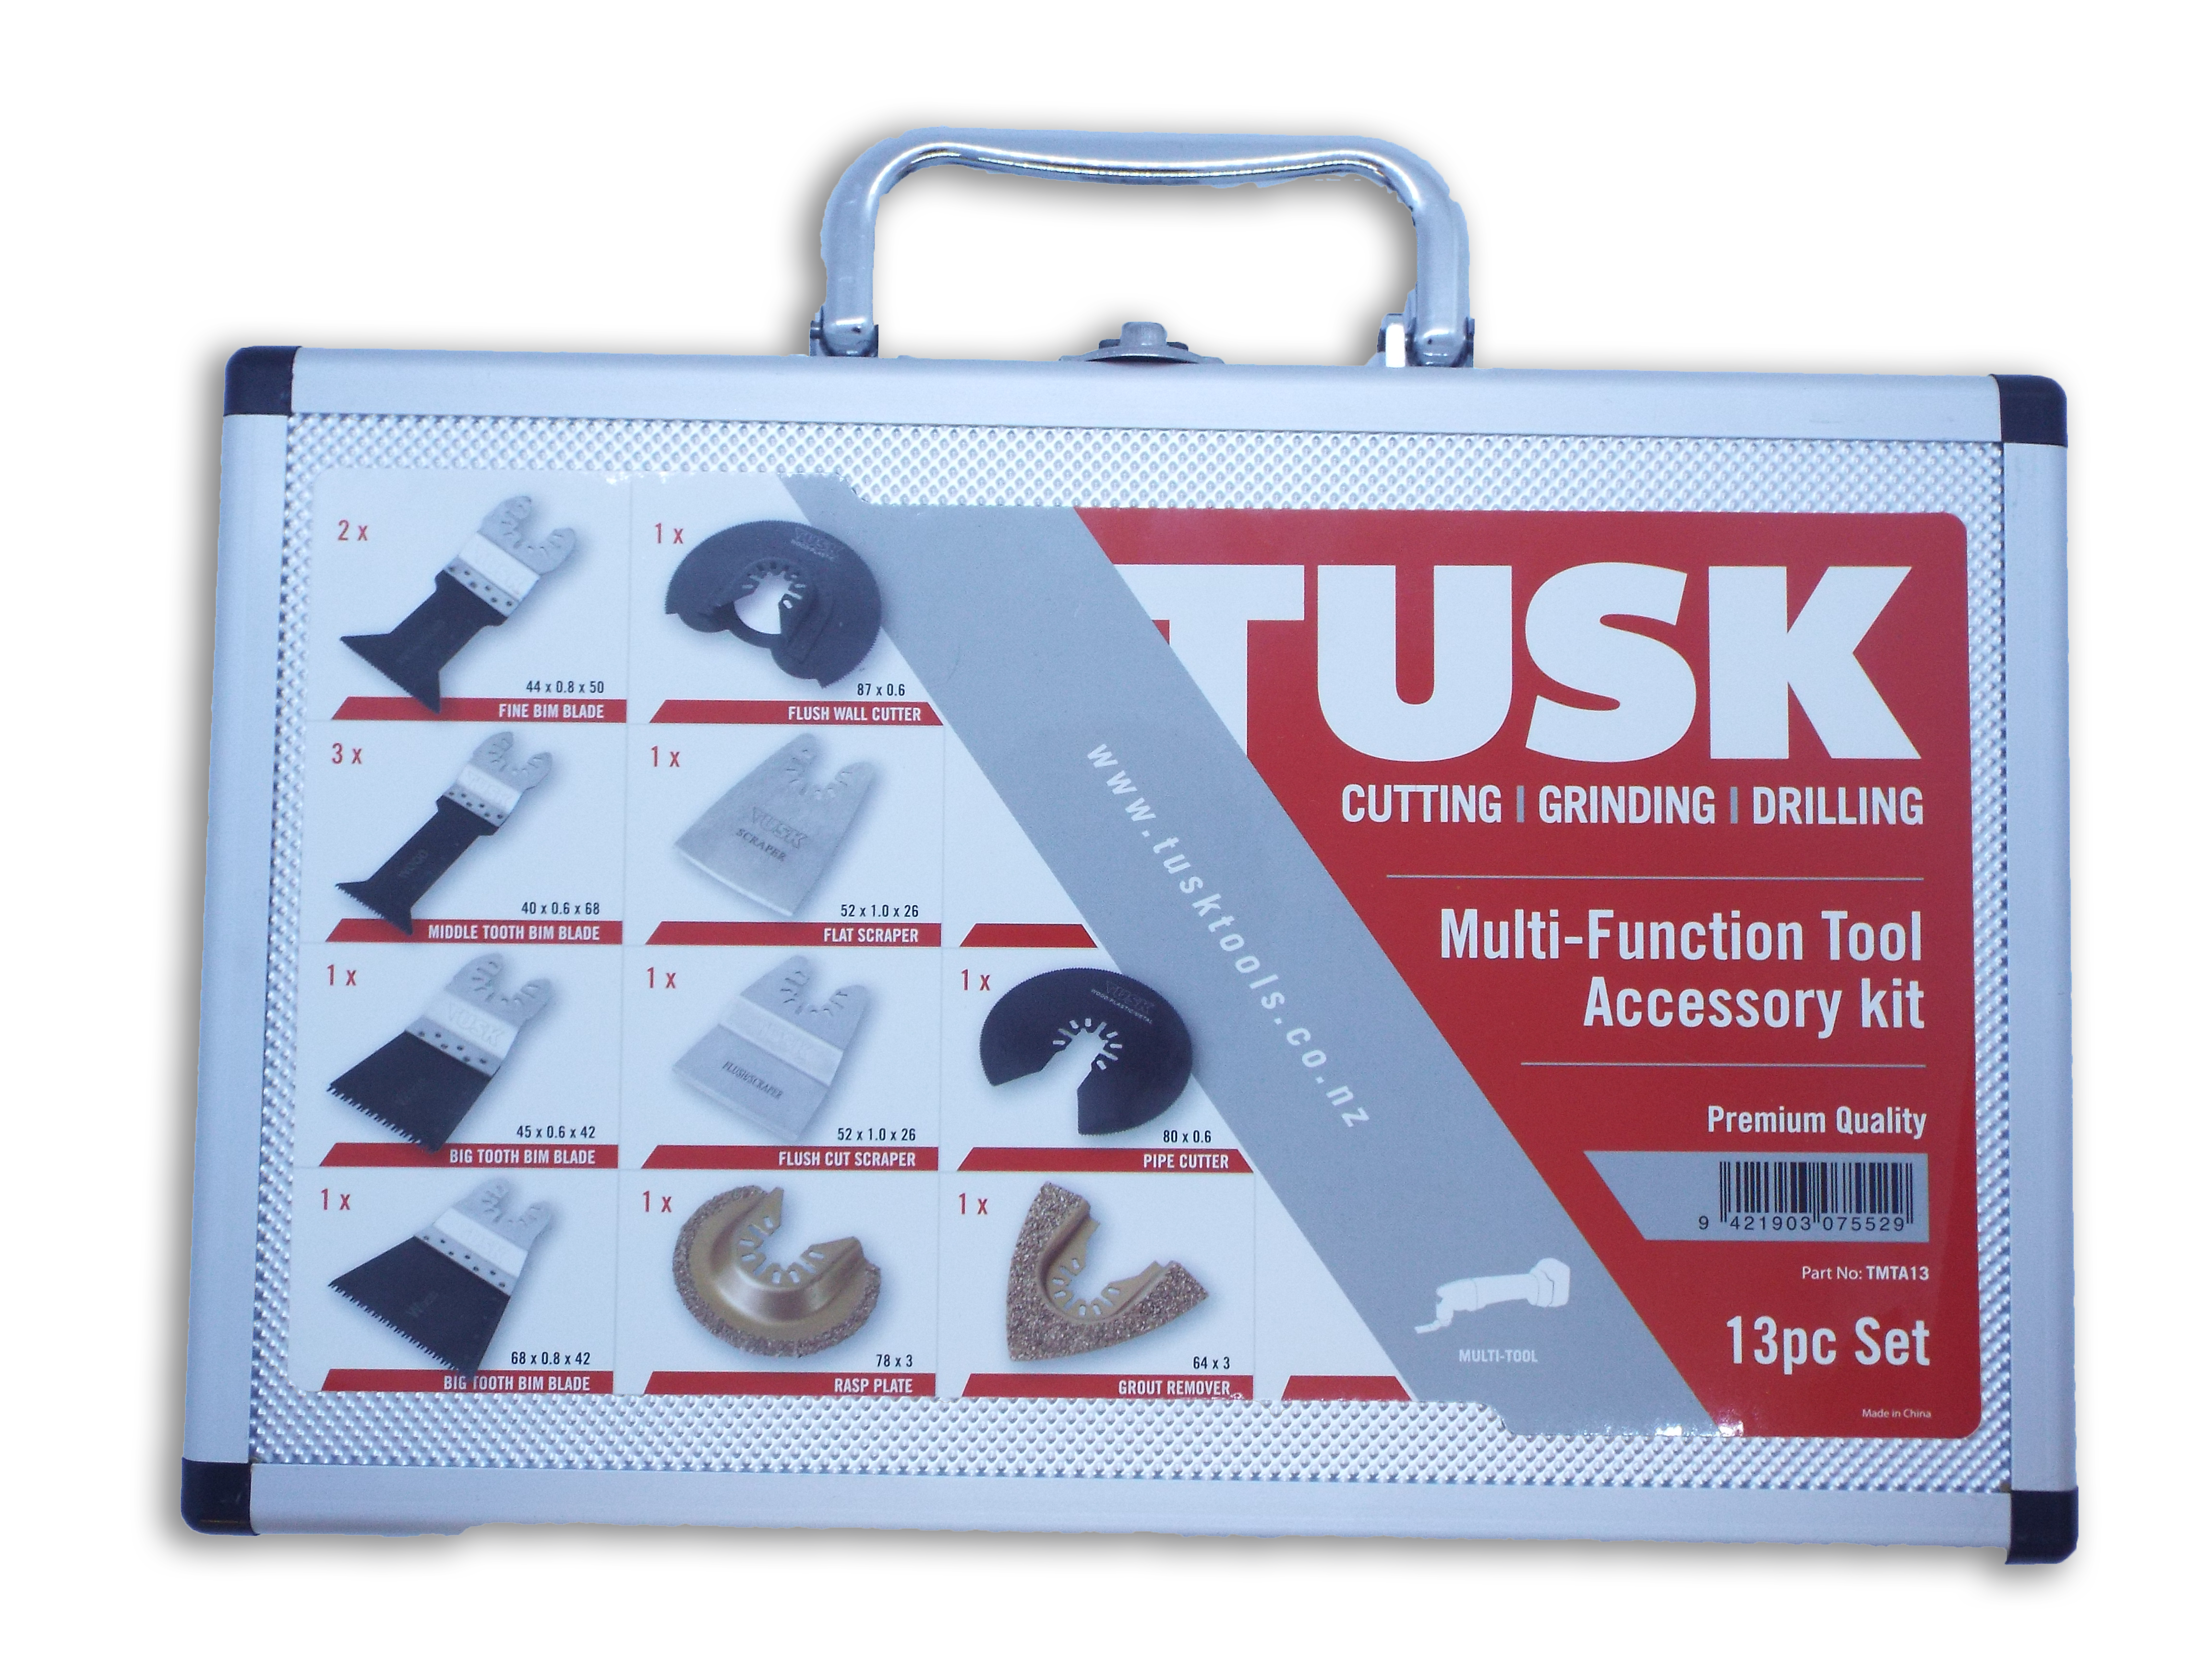 Tusk Multi Tools Accessories Kits - 13Pc